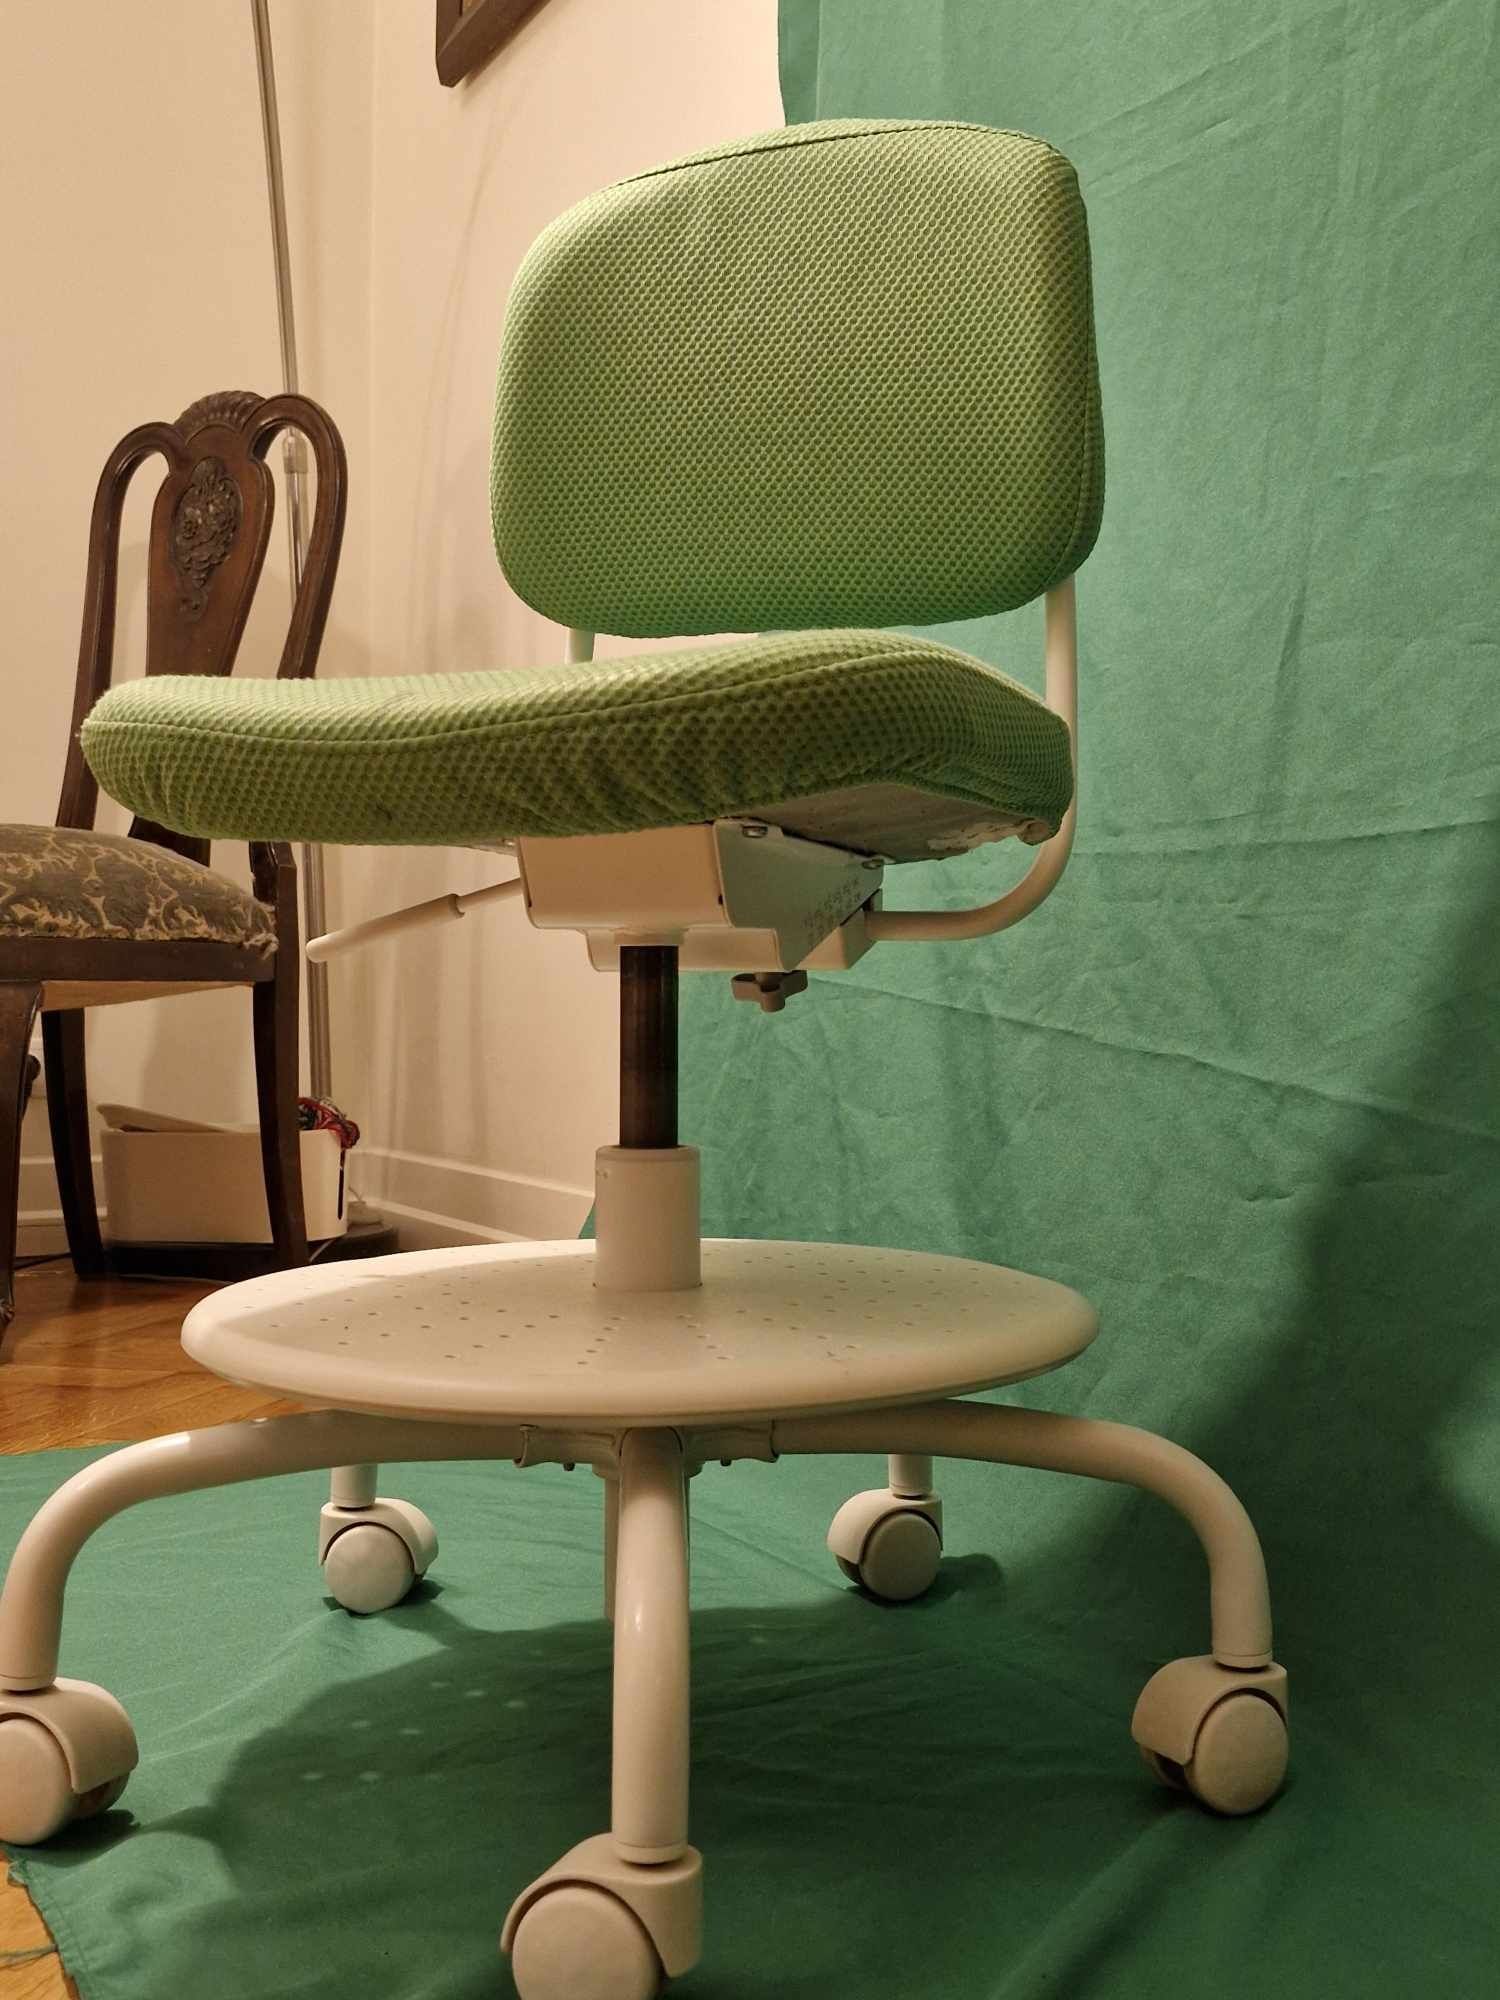 Krzesło Biurkowe Ikea - przyjazna kolorystyka - dla dzieci!